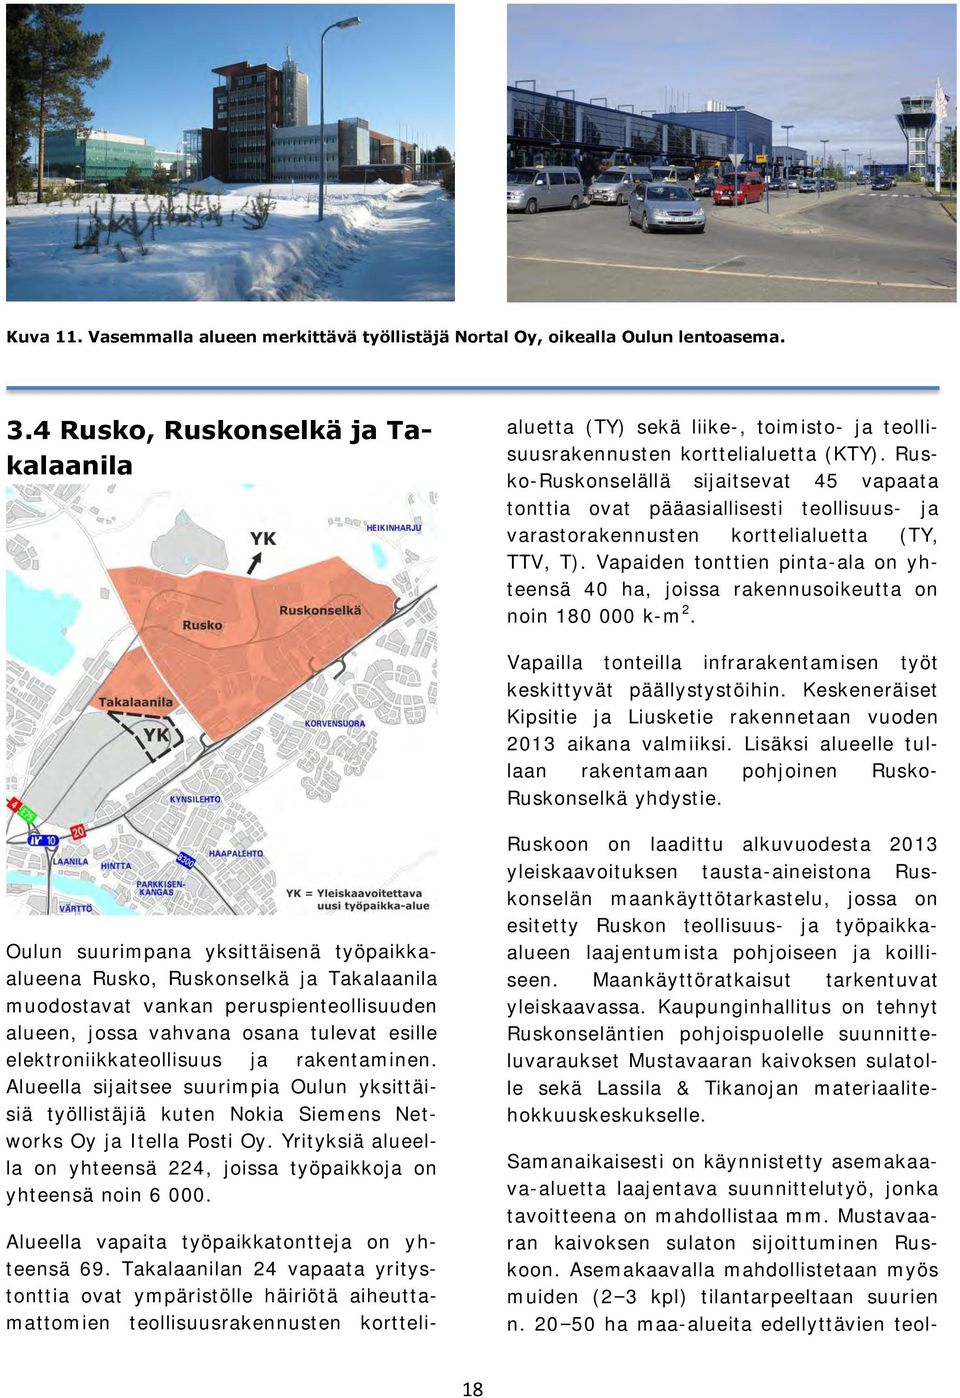 Rusko-Ruskonselällä sijaitsevat 45 vapaata tonttia ovat pääasiallisesti teollisuus- ja varastorakennusten korttelialuetta (TY, TTV, T).